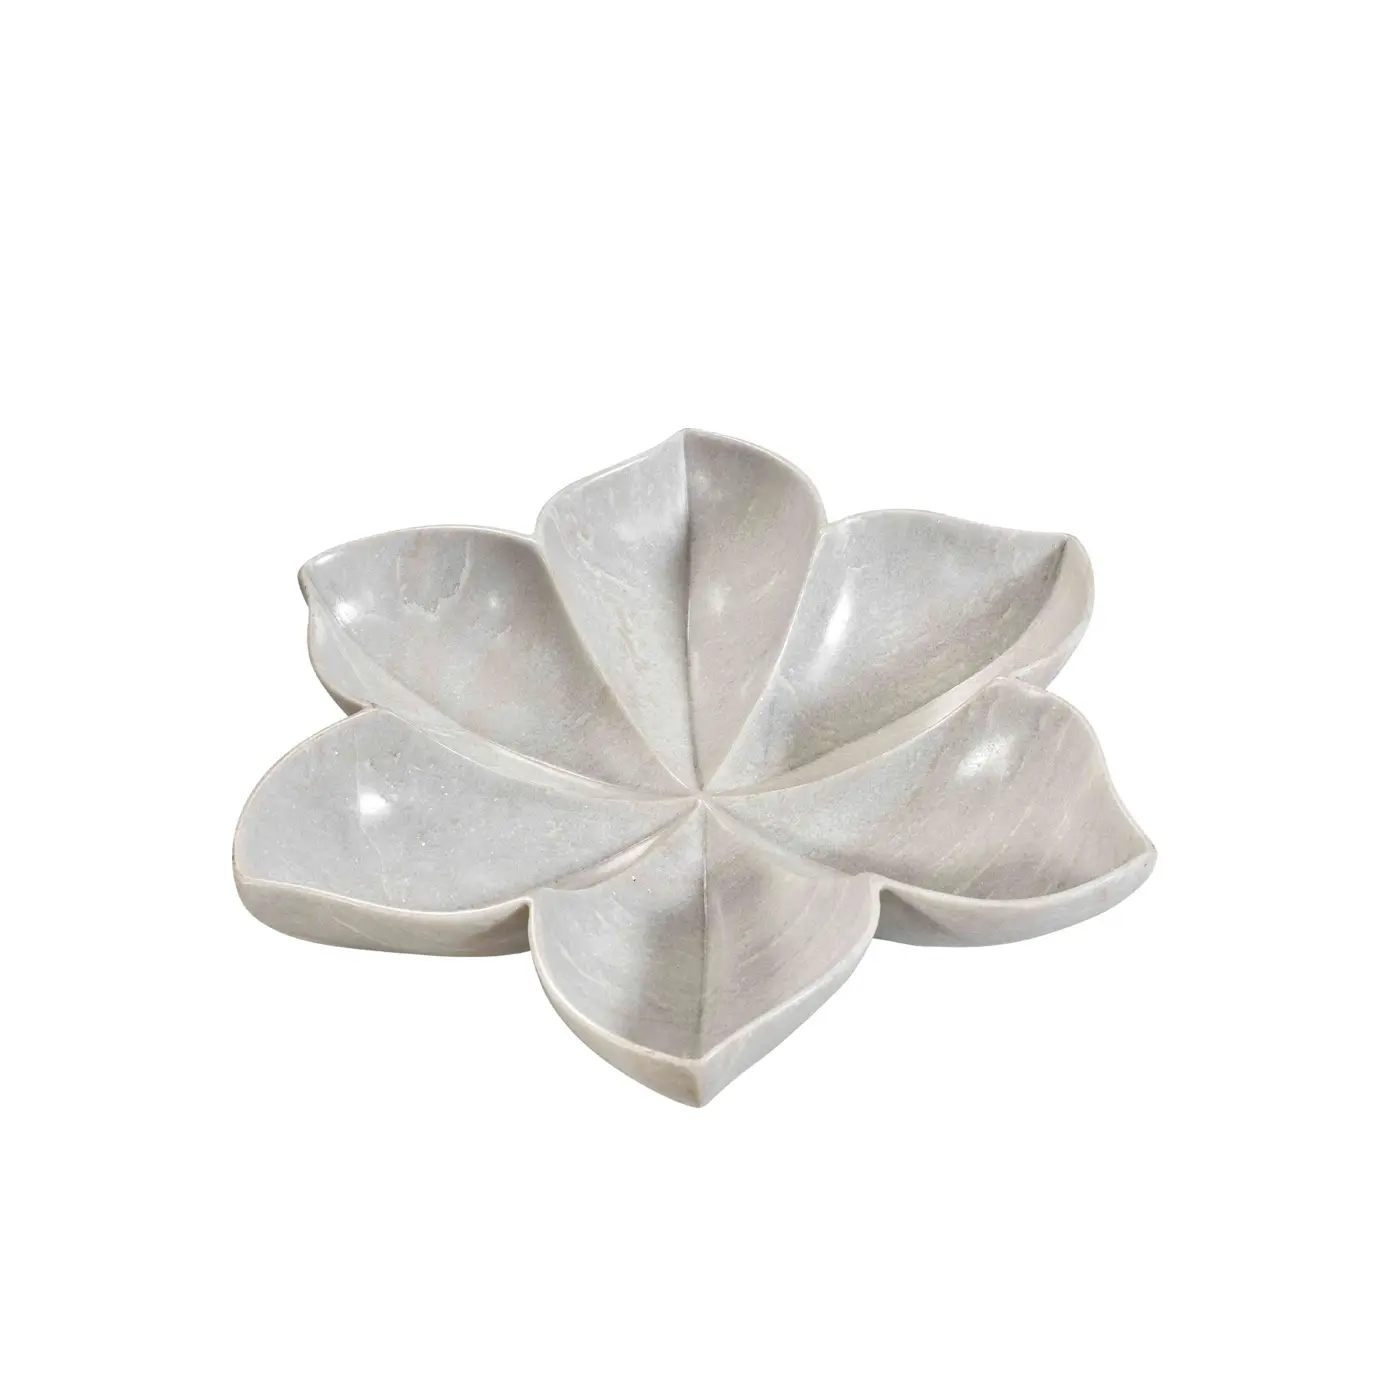 Makrana ชามผลไม้หินหินอ่อนสีขาวทรงดอกบัวจานหินอ่อน urli อุปกรณ์ตกแต่งบ้านการออกแบบดอกไม้หินอ่อนธรรมชาติ